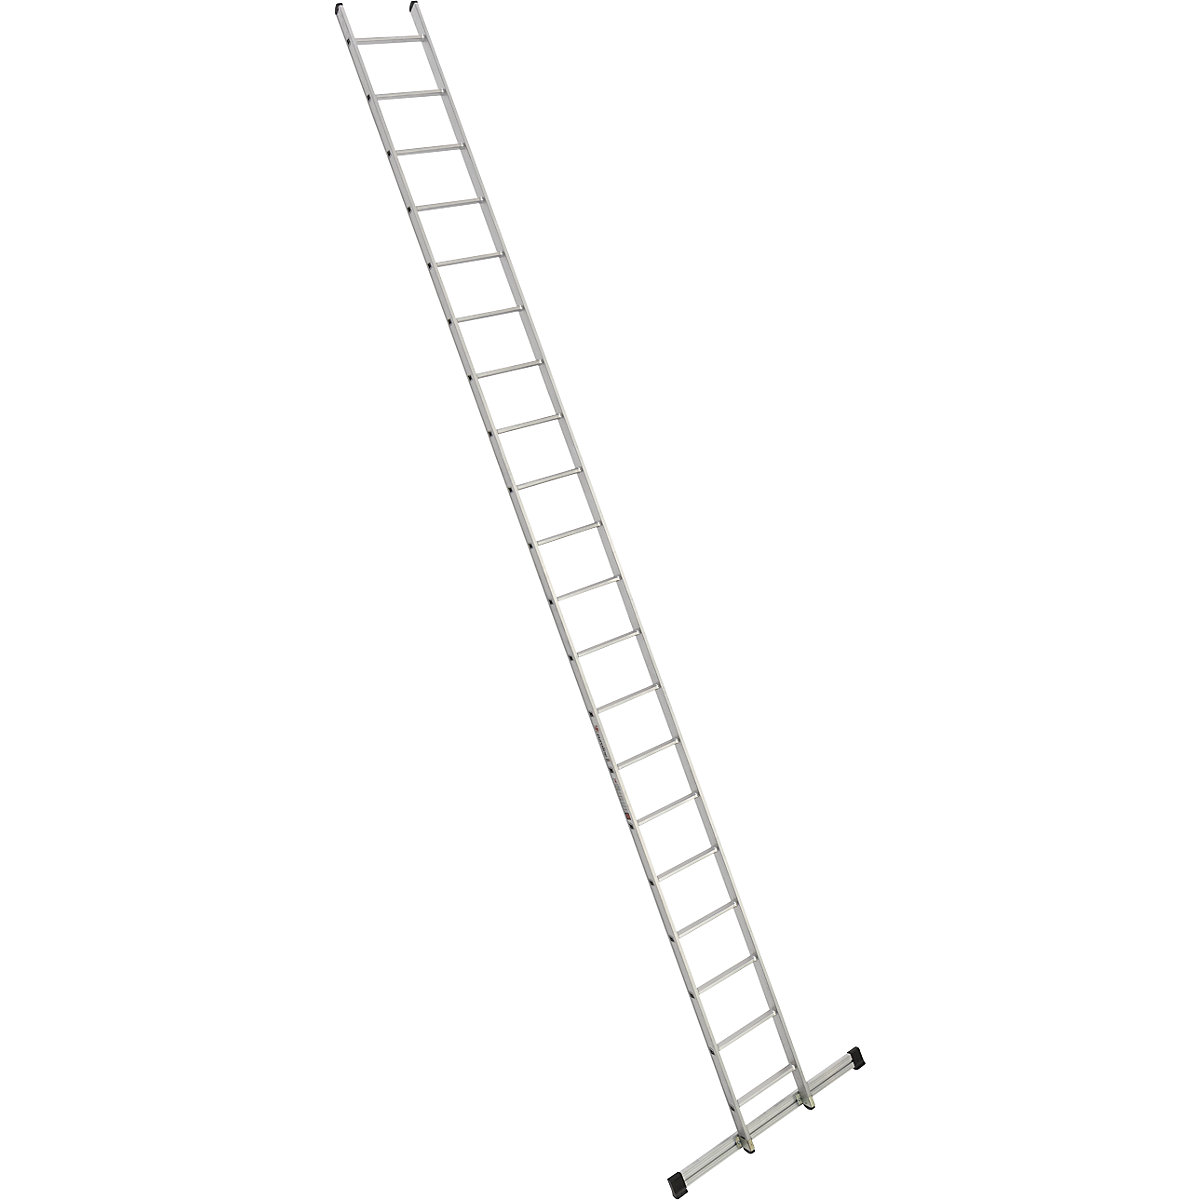 Escada de encosto – euroline, largura 410 mm, 20 degraus com travessa-8